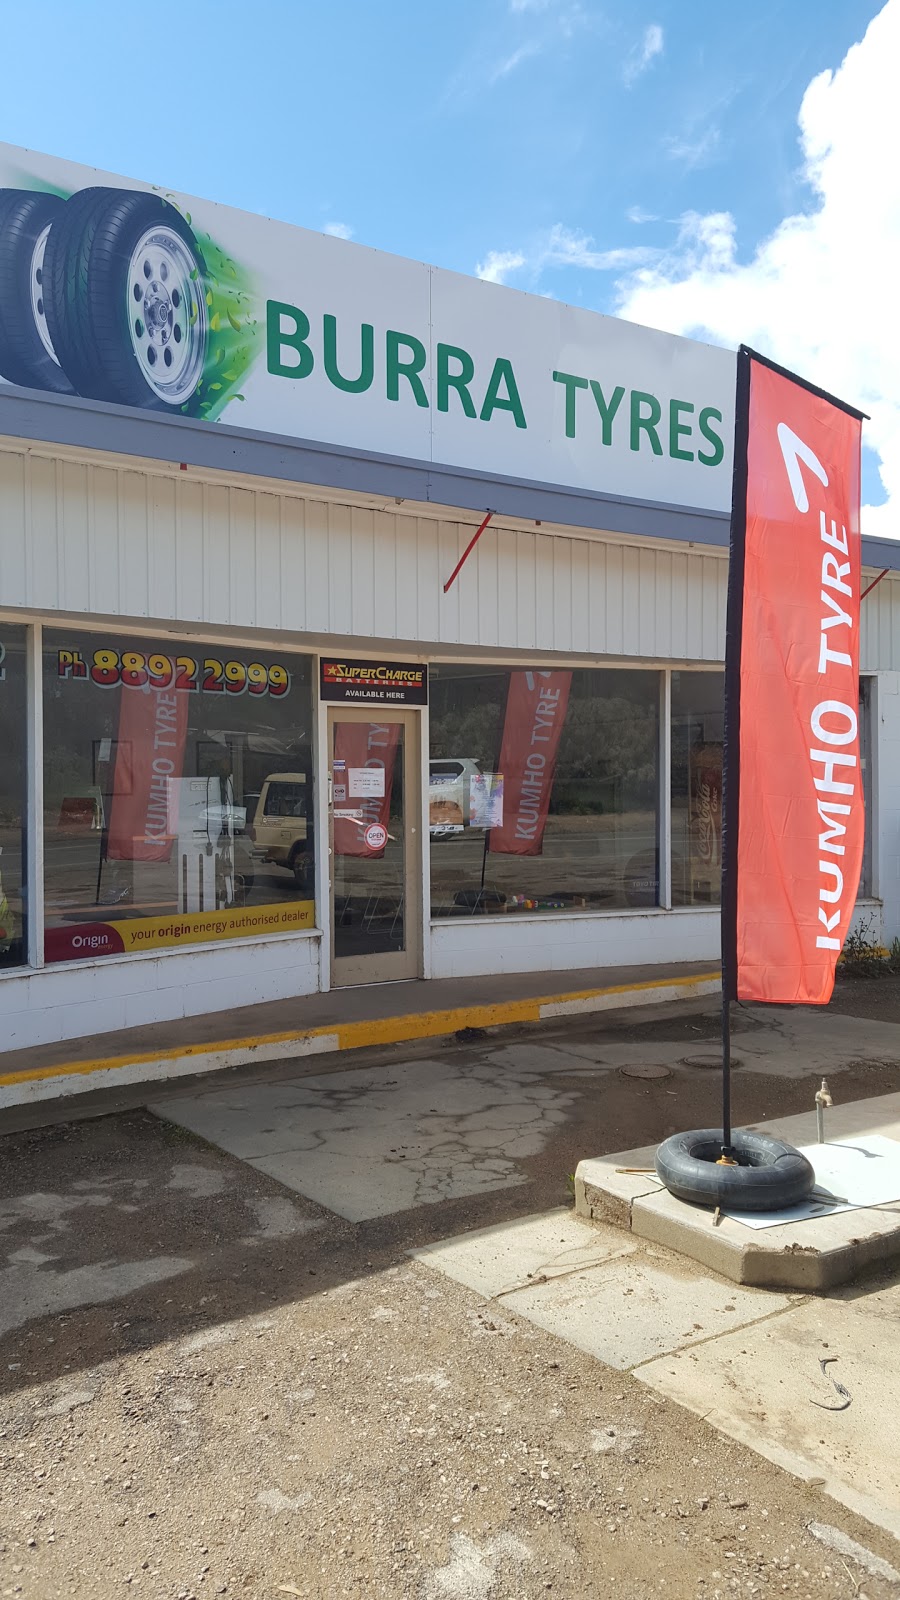 Burra Tyres | car repair | 7 Market St, Burra SA 5417, Australia | 0888922999 OR +61 8 8892 2999